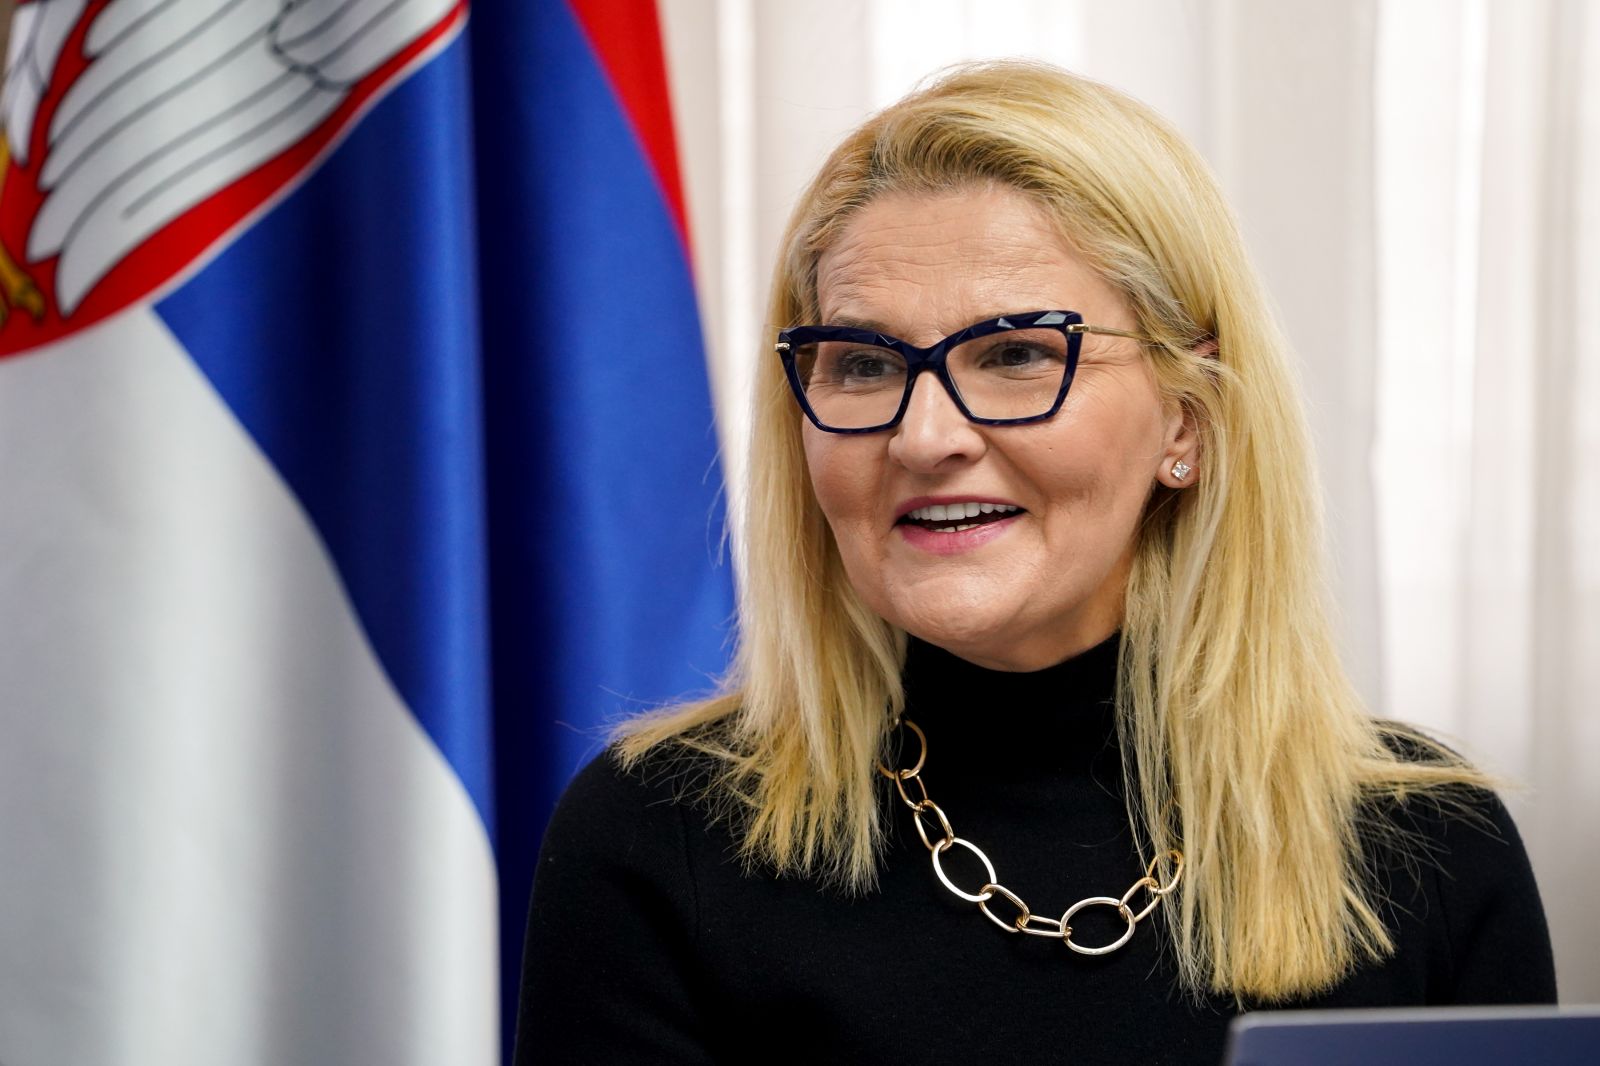 Miščević: 2030 Agenda is Serbia’s national priority